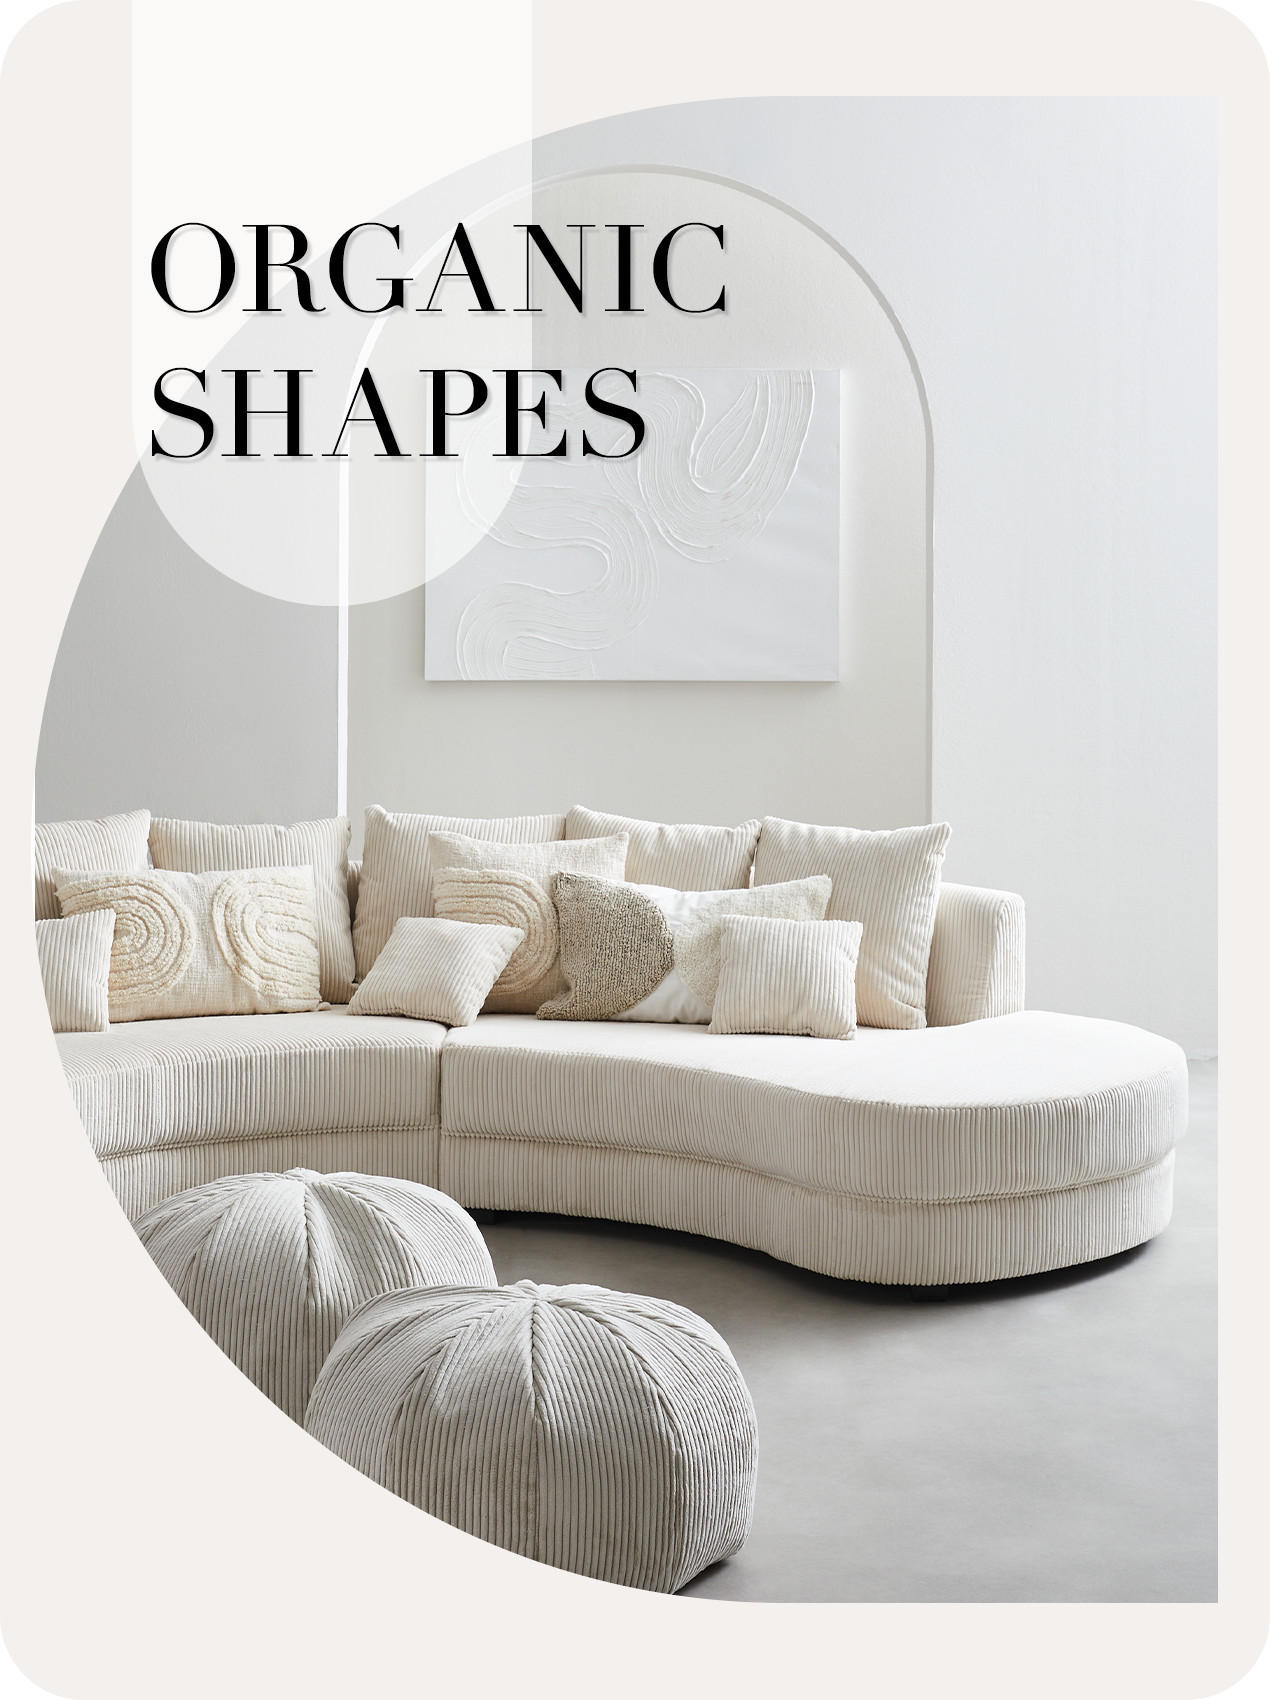 Organische Möbel für zeitlose Eleganz – Entdecken Sie natürliche Schönheit  